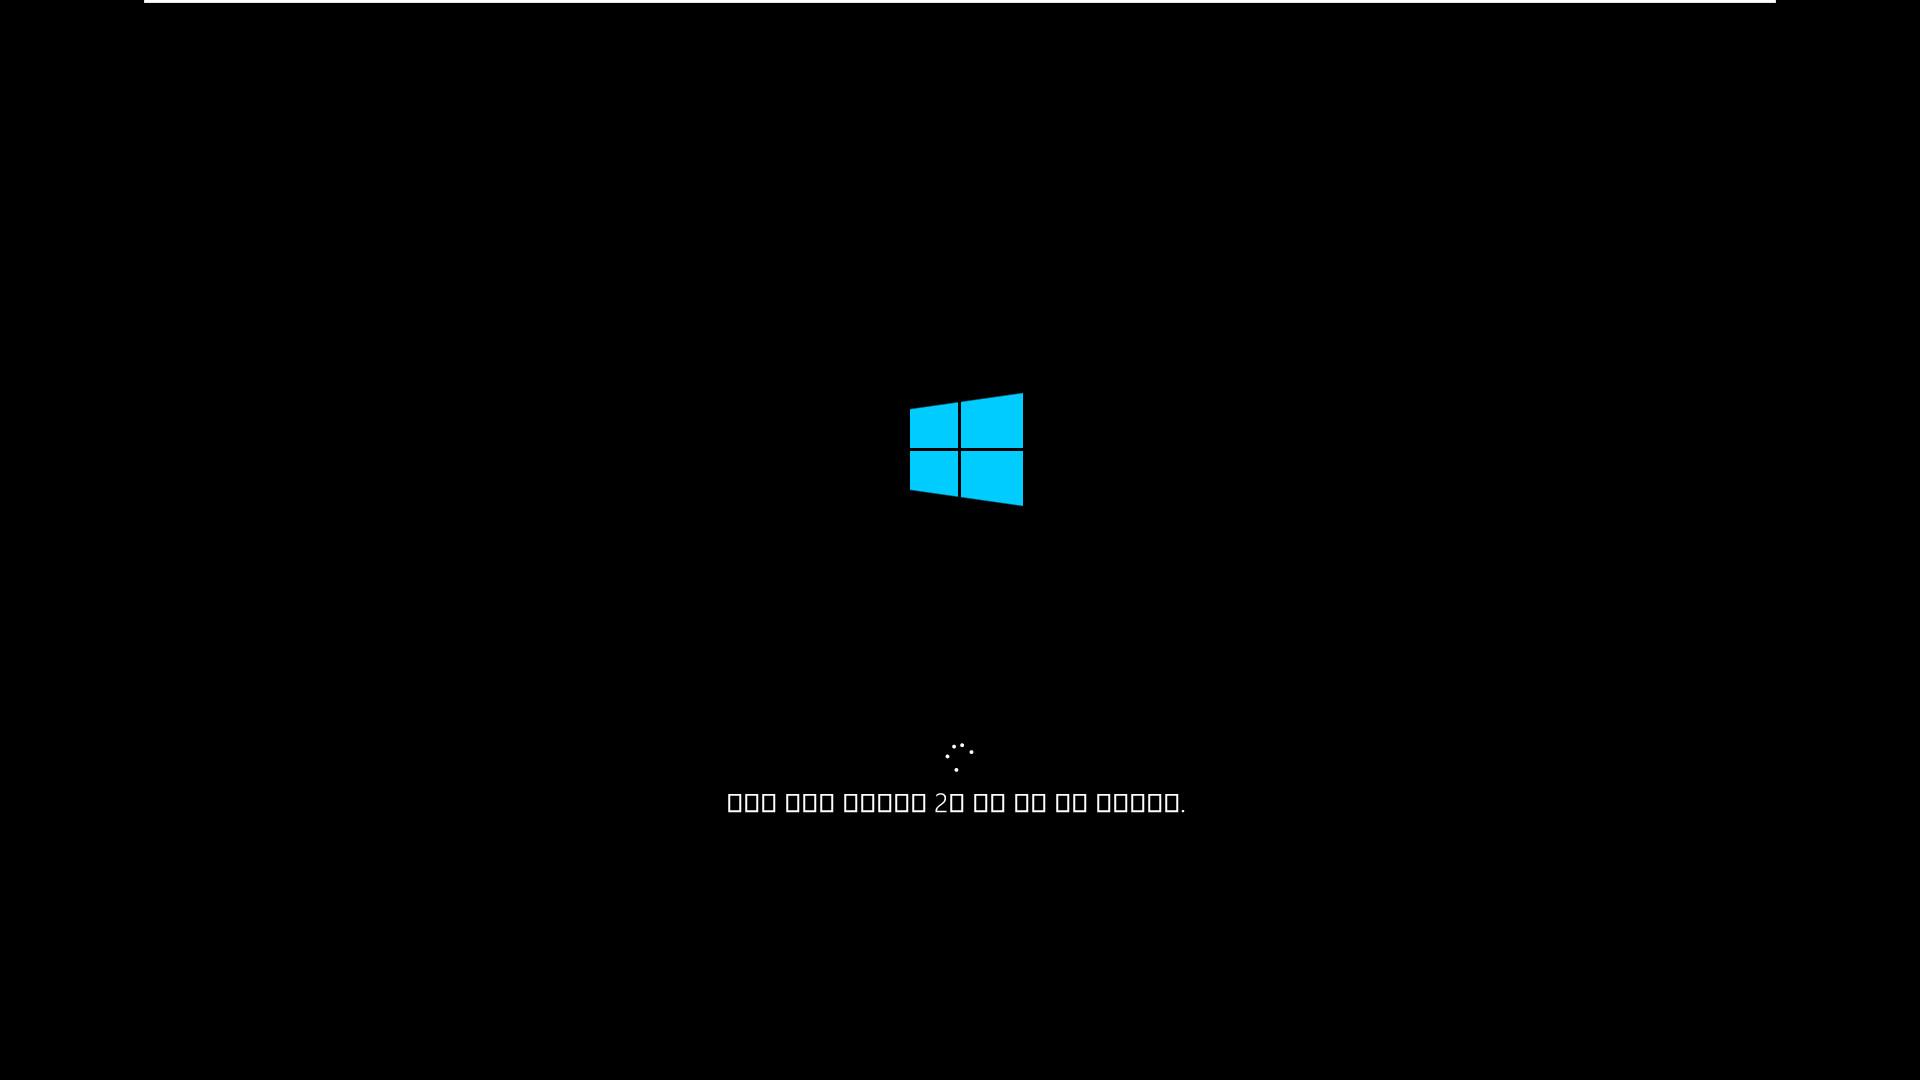 3.Kong_Windows10_v2009_19042.610_x64.vhd 에 Imagew64.exe 으로 복구하여 부팅 테스트 - 드라이브 복구하게 놔둠 2020-11-07_223118.jpg